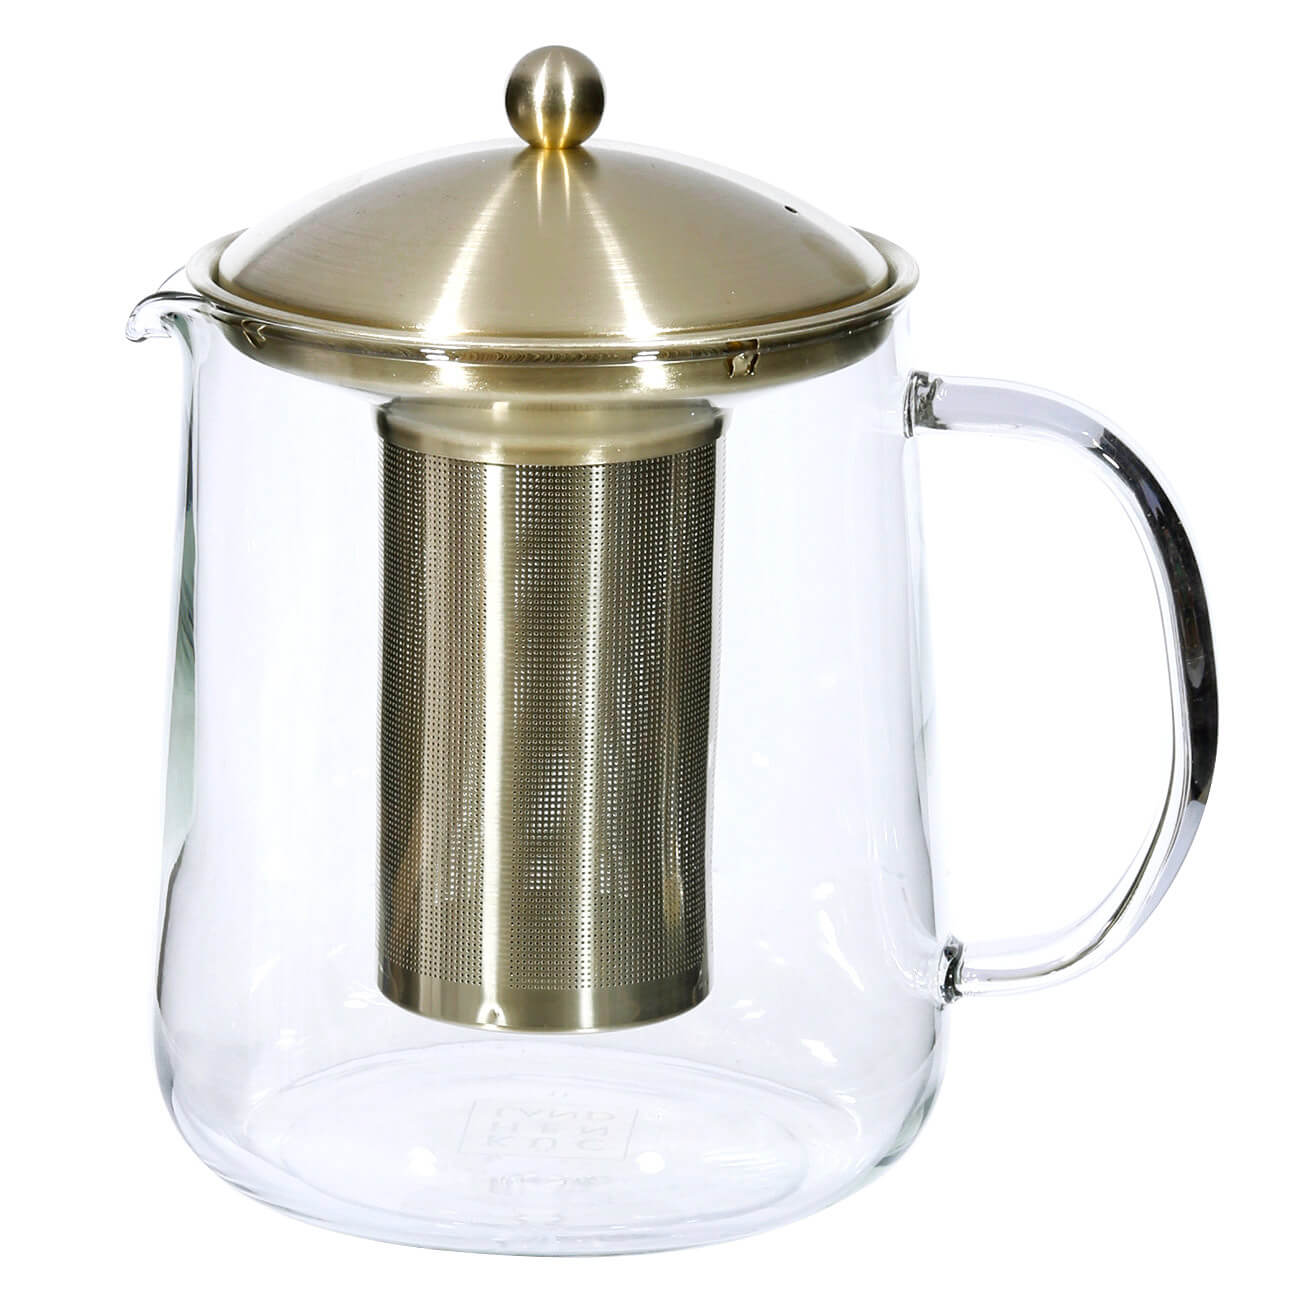 Чайник заварочный, 1 л, стекло Б/сталь, золотистый, Macchiato чайник заварочный 650 мл на подставке стекло б пробка clear